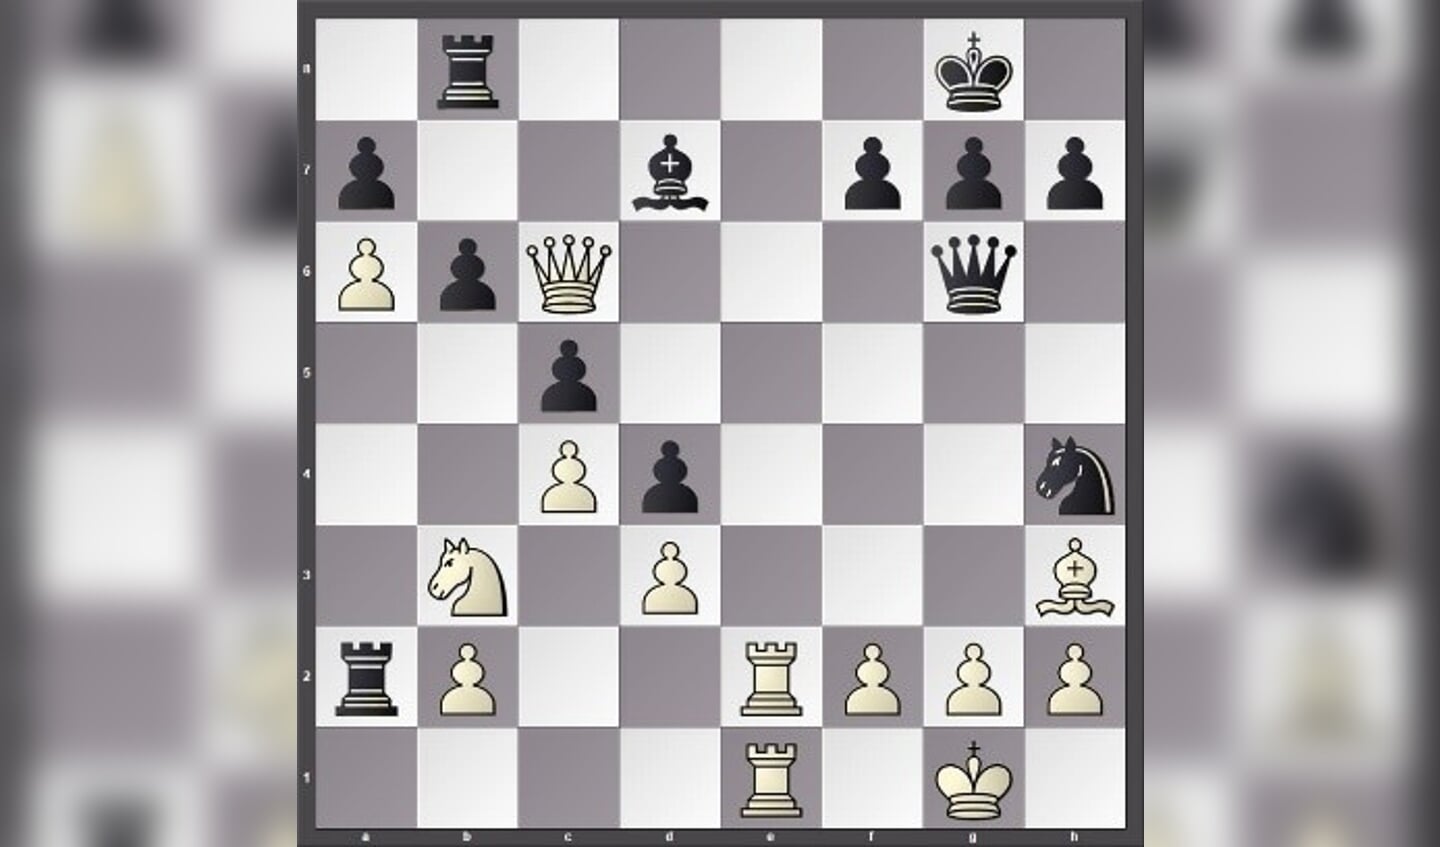 Een volle stelling links, maar wit kan in een aantal zetten winnen door zwart schaakmat te zetten, de vraag is hoe?